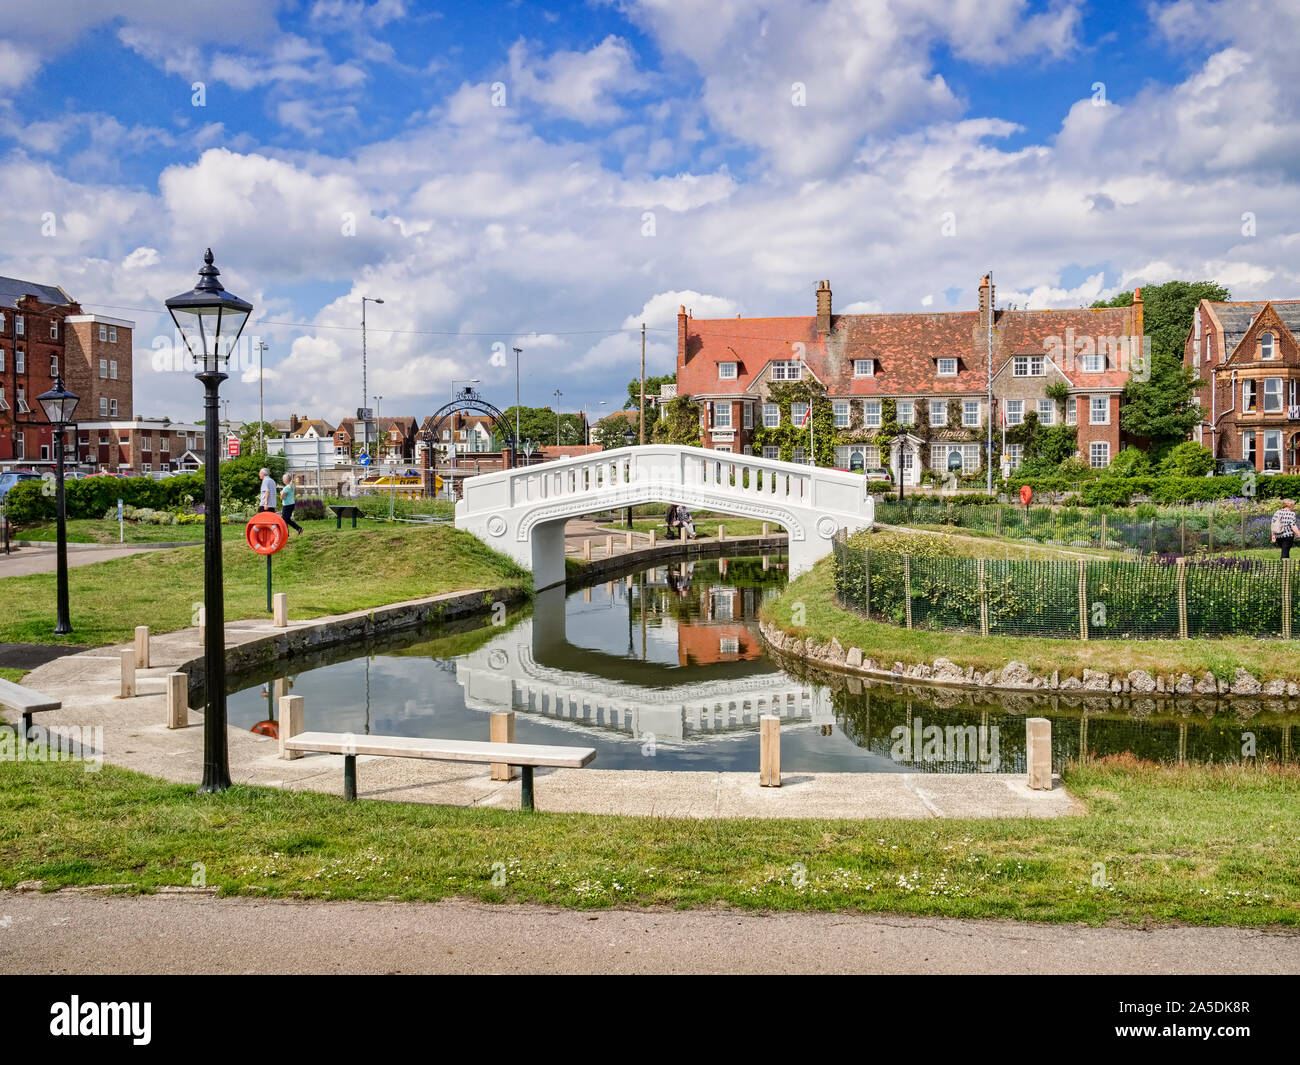 20 Juin 2019 : Great Yarmouth, Norfolk, UK - Partie de l'eau Venise et lac de plaisance, Great Yarmouth. Datant de 1928, le parc a été resto Banque D'Images